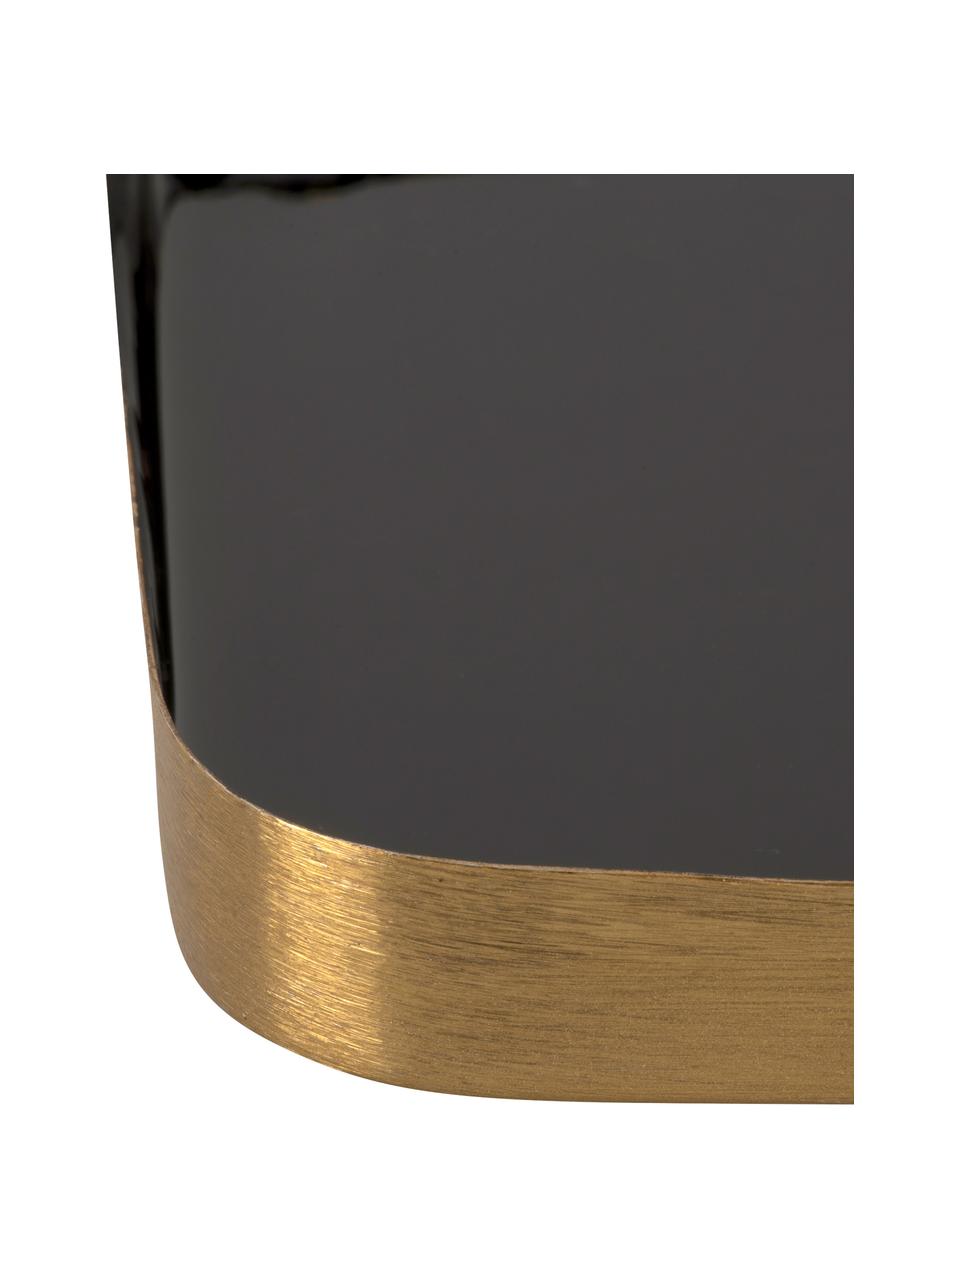 Decoratief dienblad Festive met glanzende oppervlak in zwart, Gecoat metaal, Zwart, goudkleurig, L 25 x B 13 cm